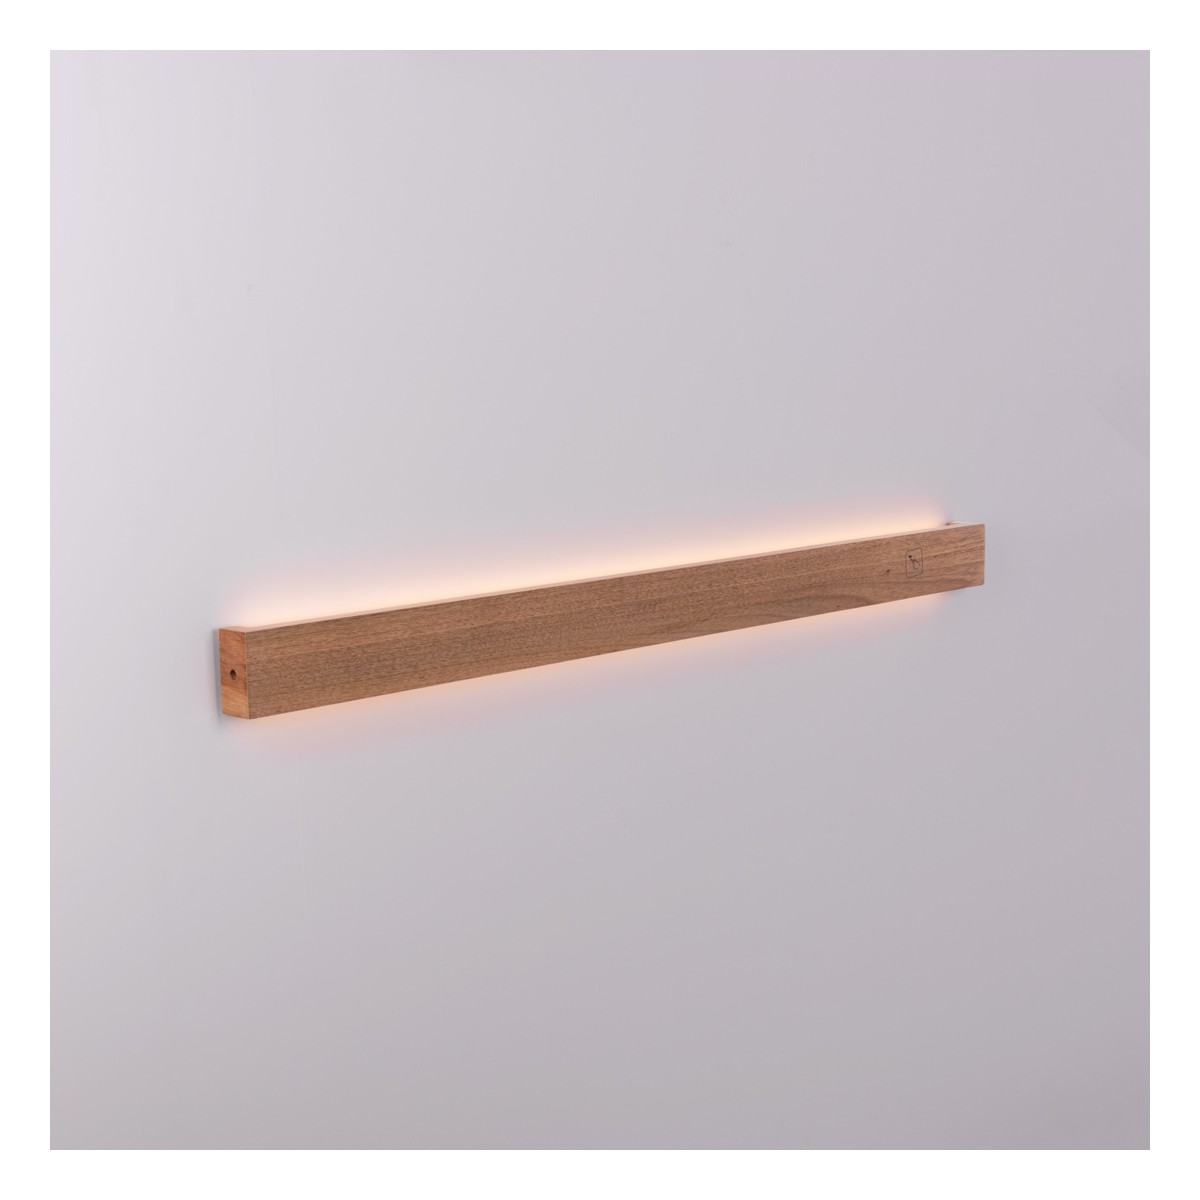 Wooden linear wall light "Wooden" - 24W - 100cm